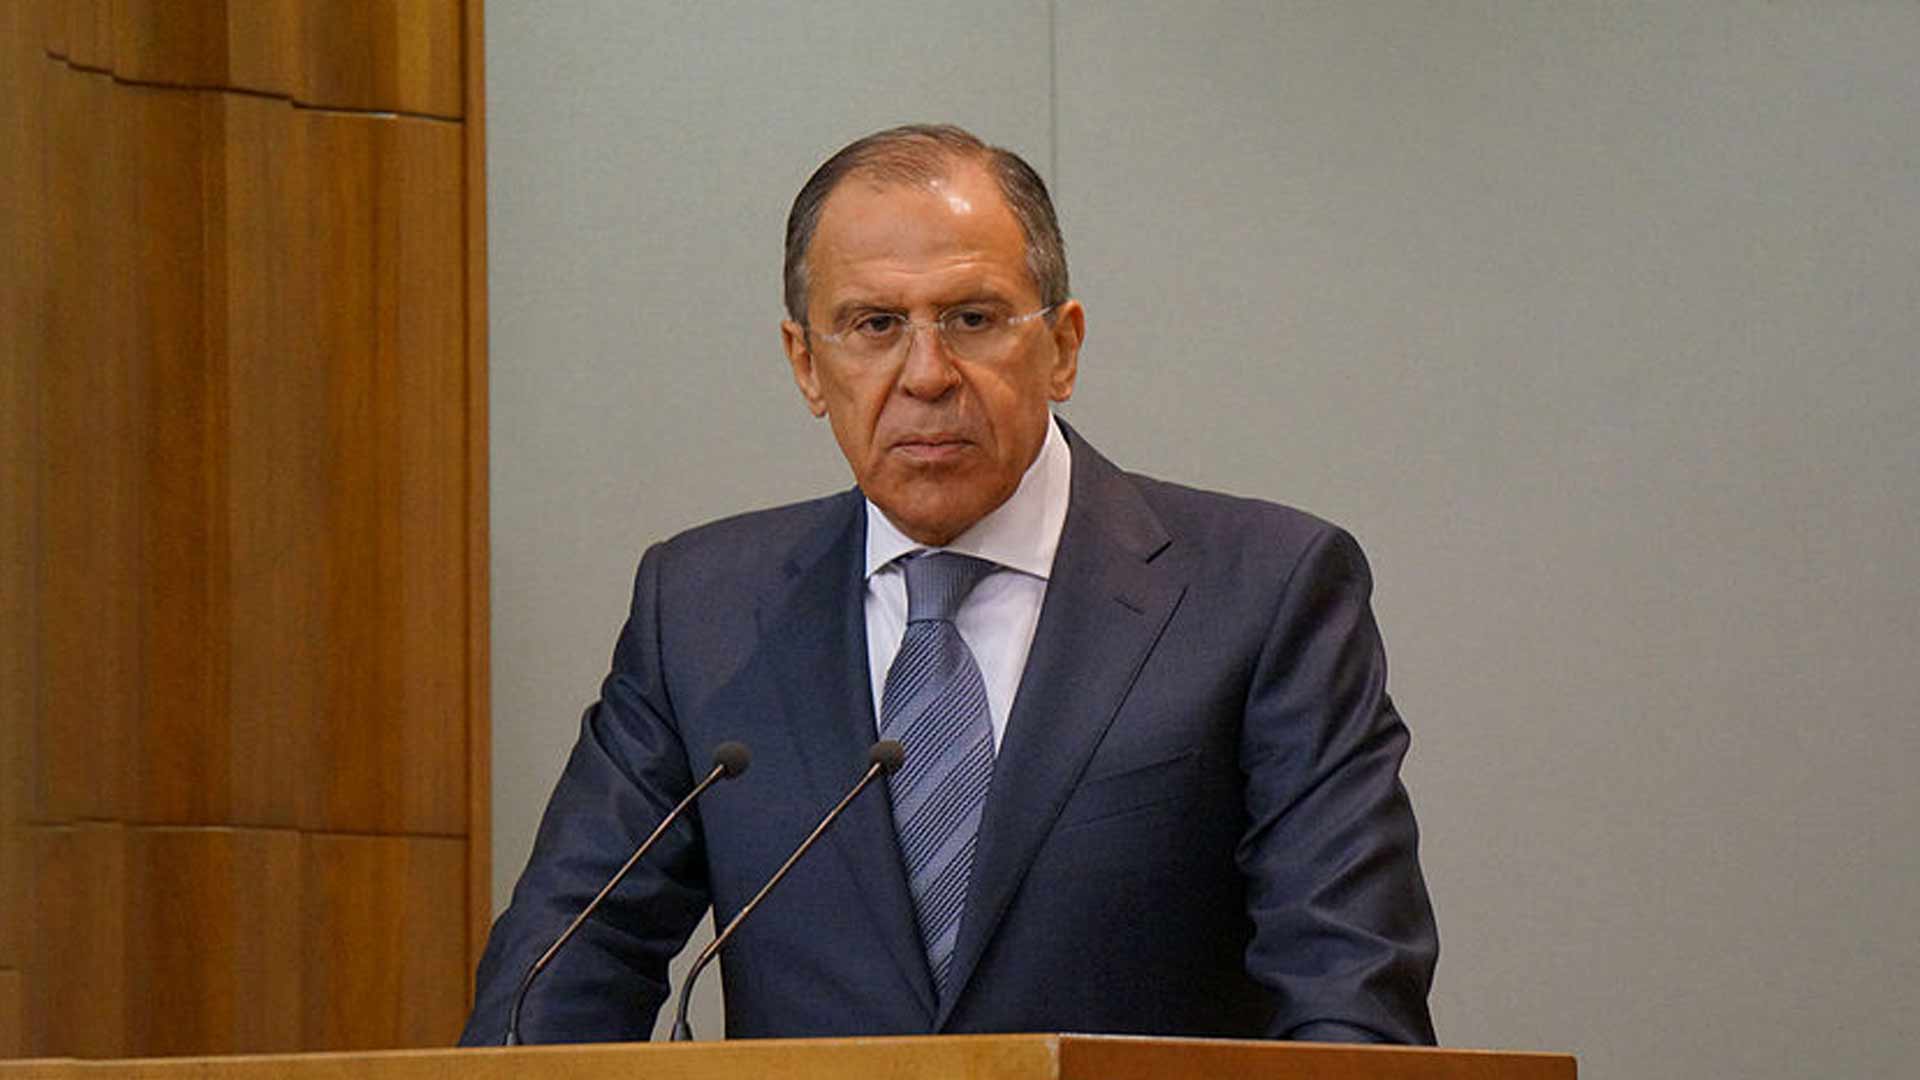 Lavrov spaventa il mondo Pericolo terza guerra mondiale